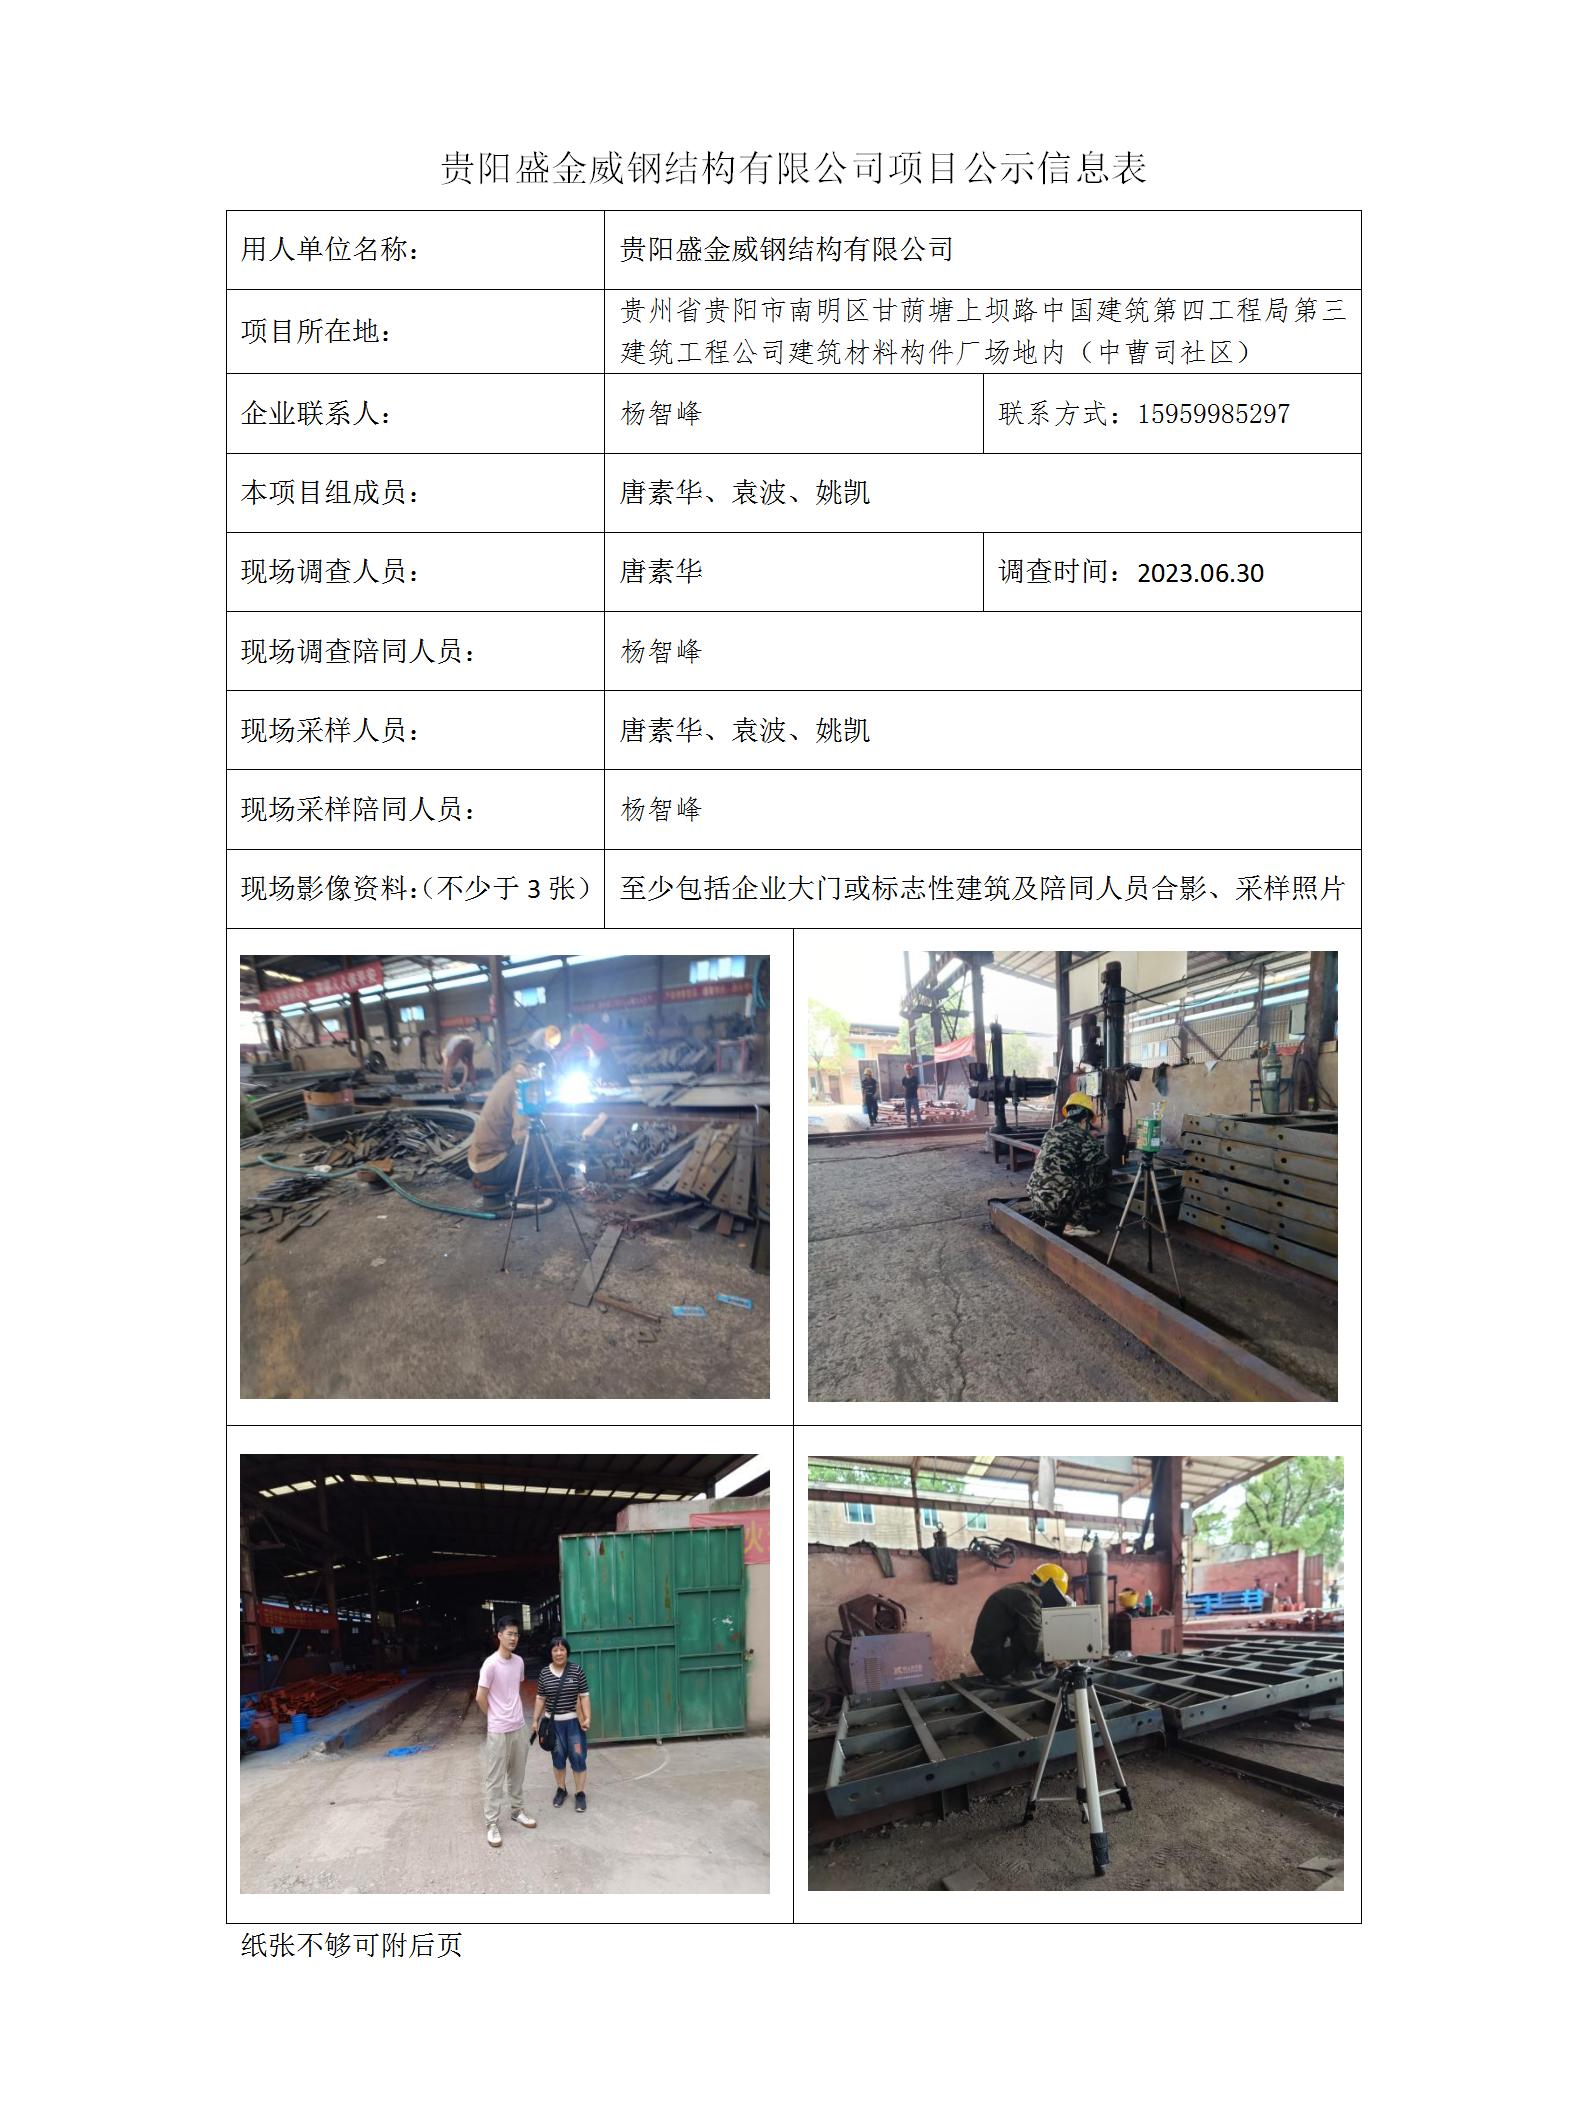 贵阳盛金威钢结构有限公司项目公示信息表_01.jpg